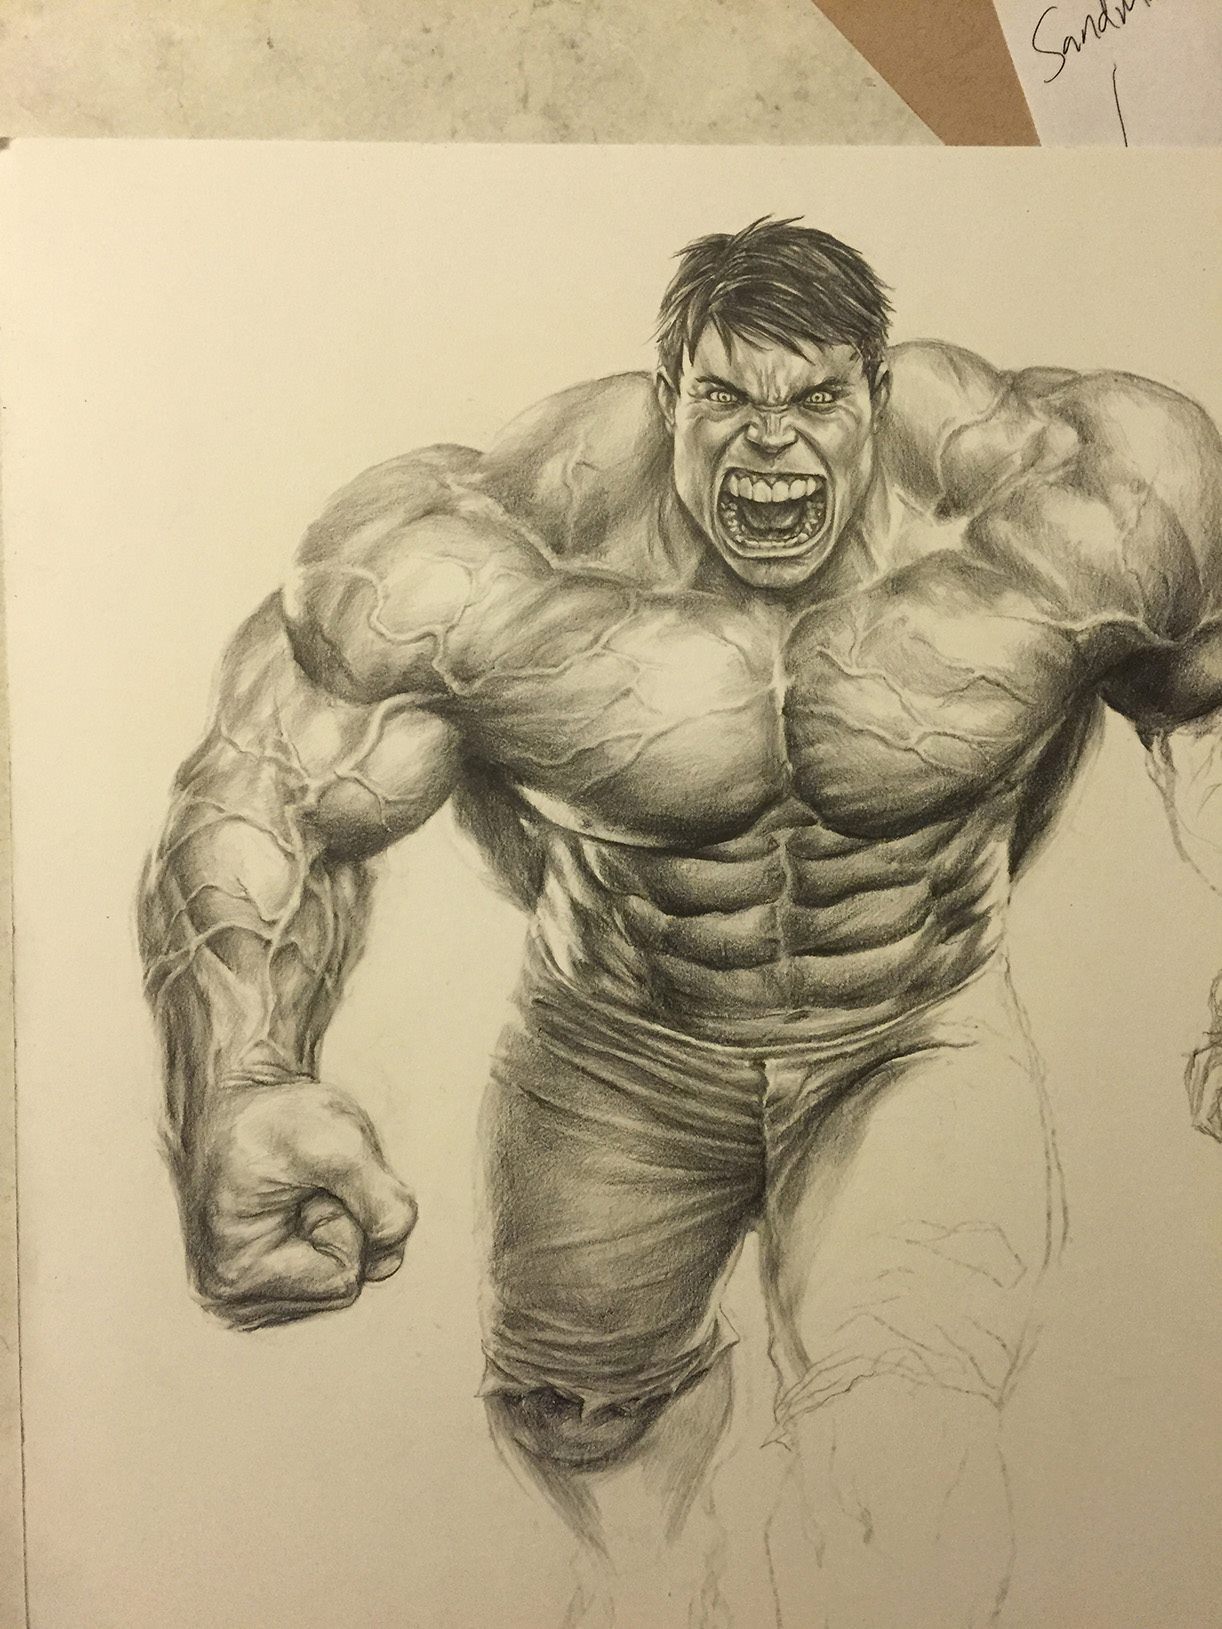 Incredible Hulk Drawing at GetDrawings Free download